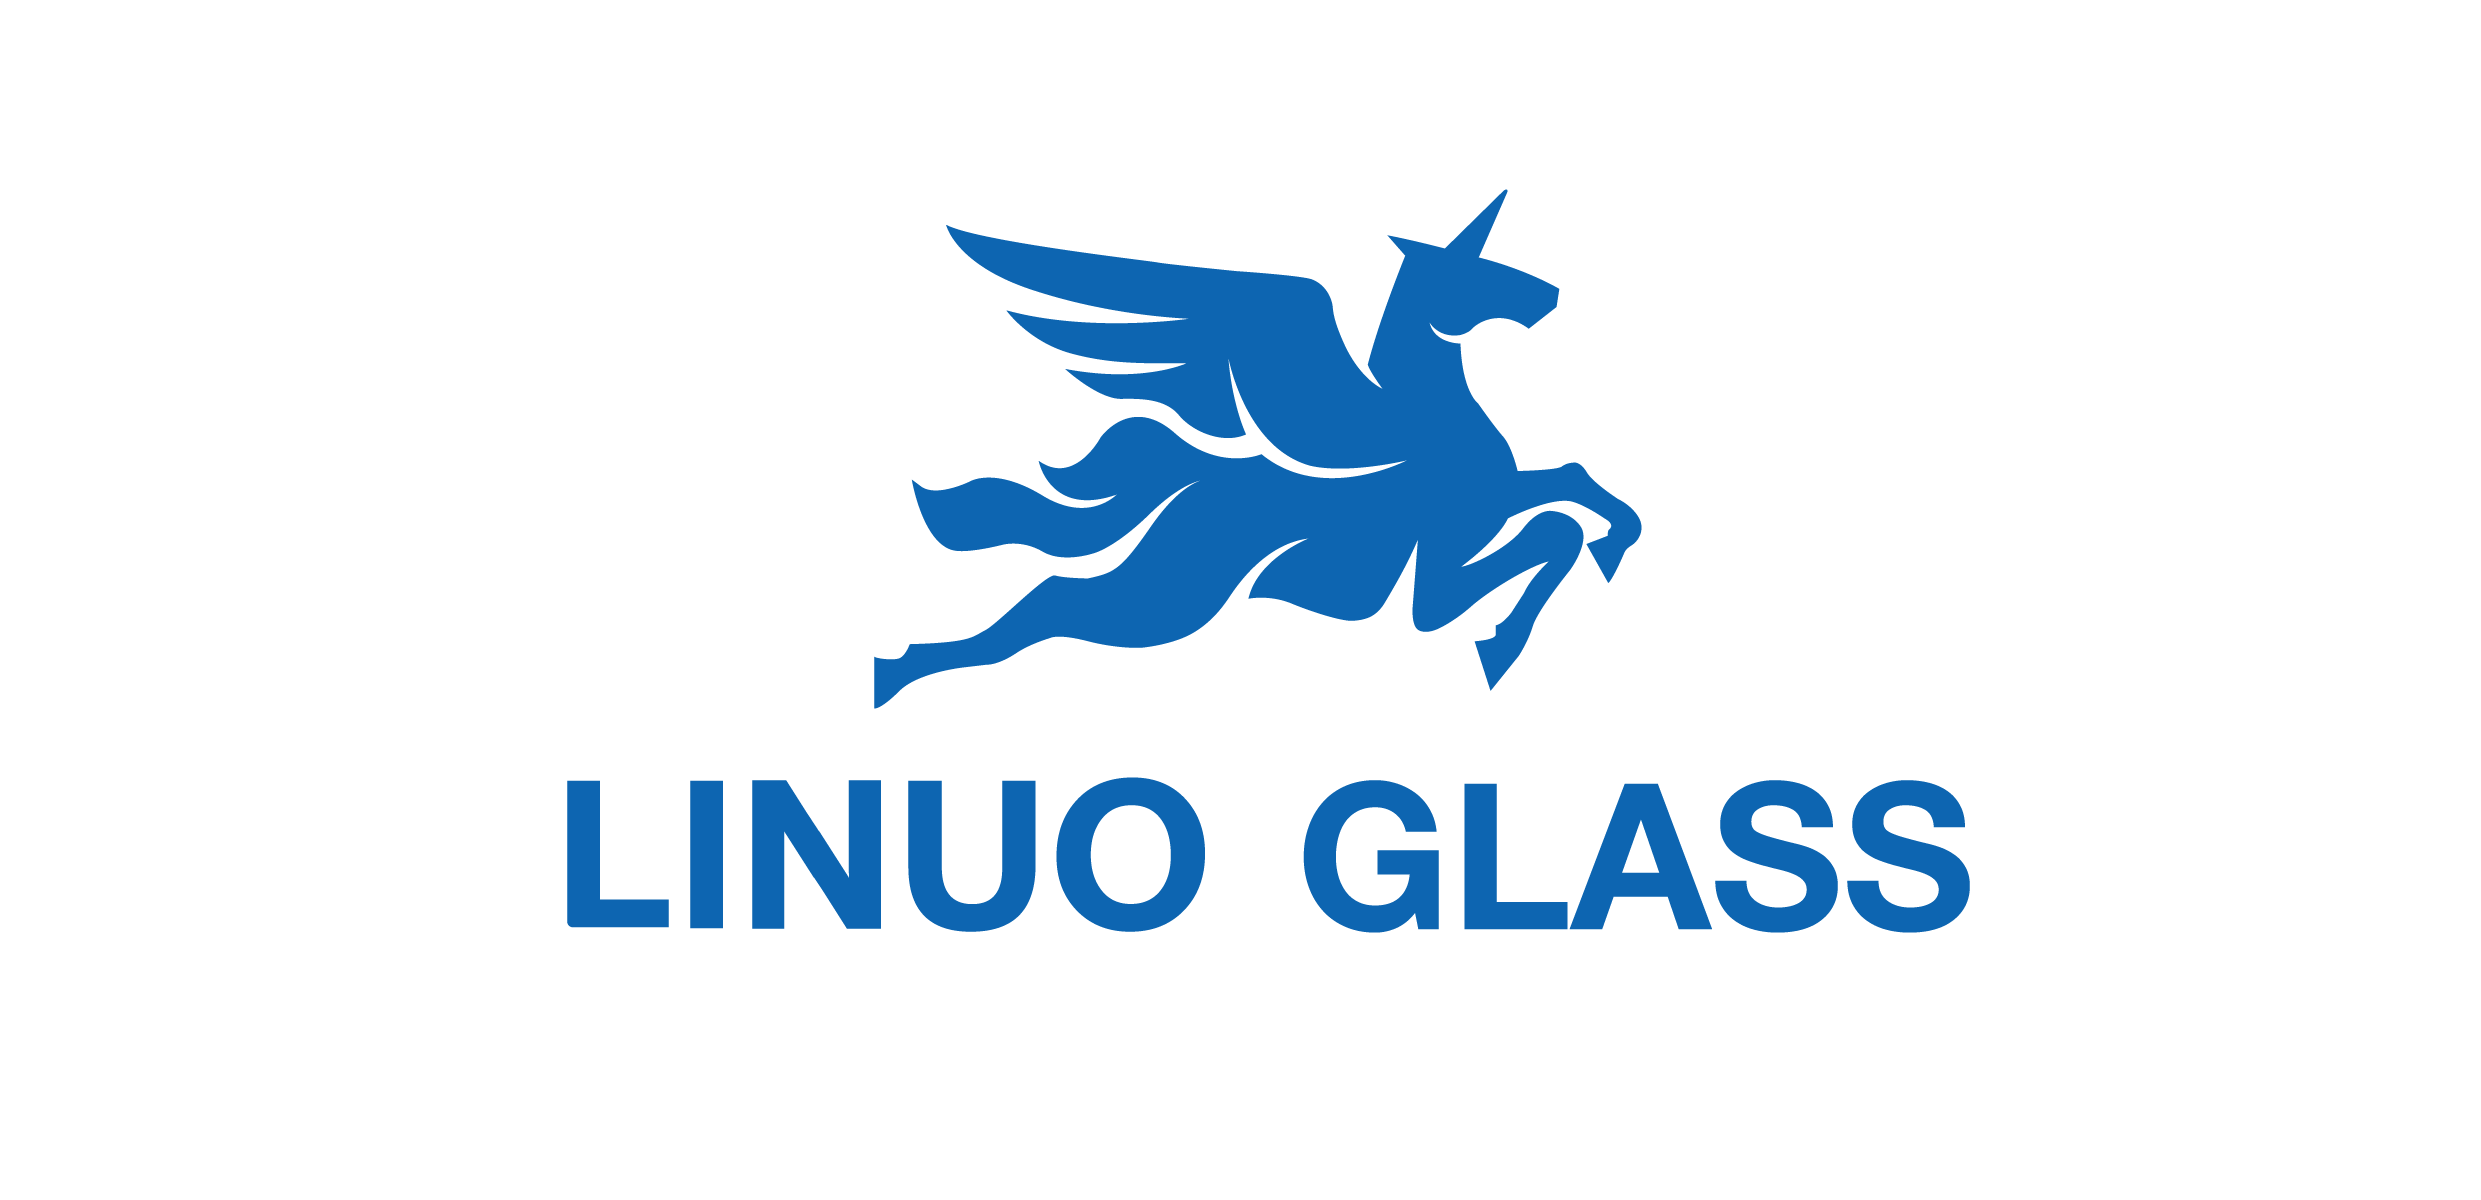 Linuo Glass: крупнейший в мире производитель боросиликатного термостойкого стекла.